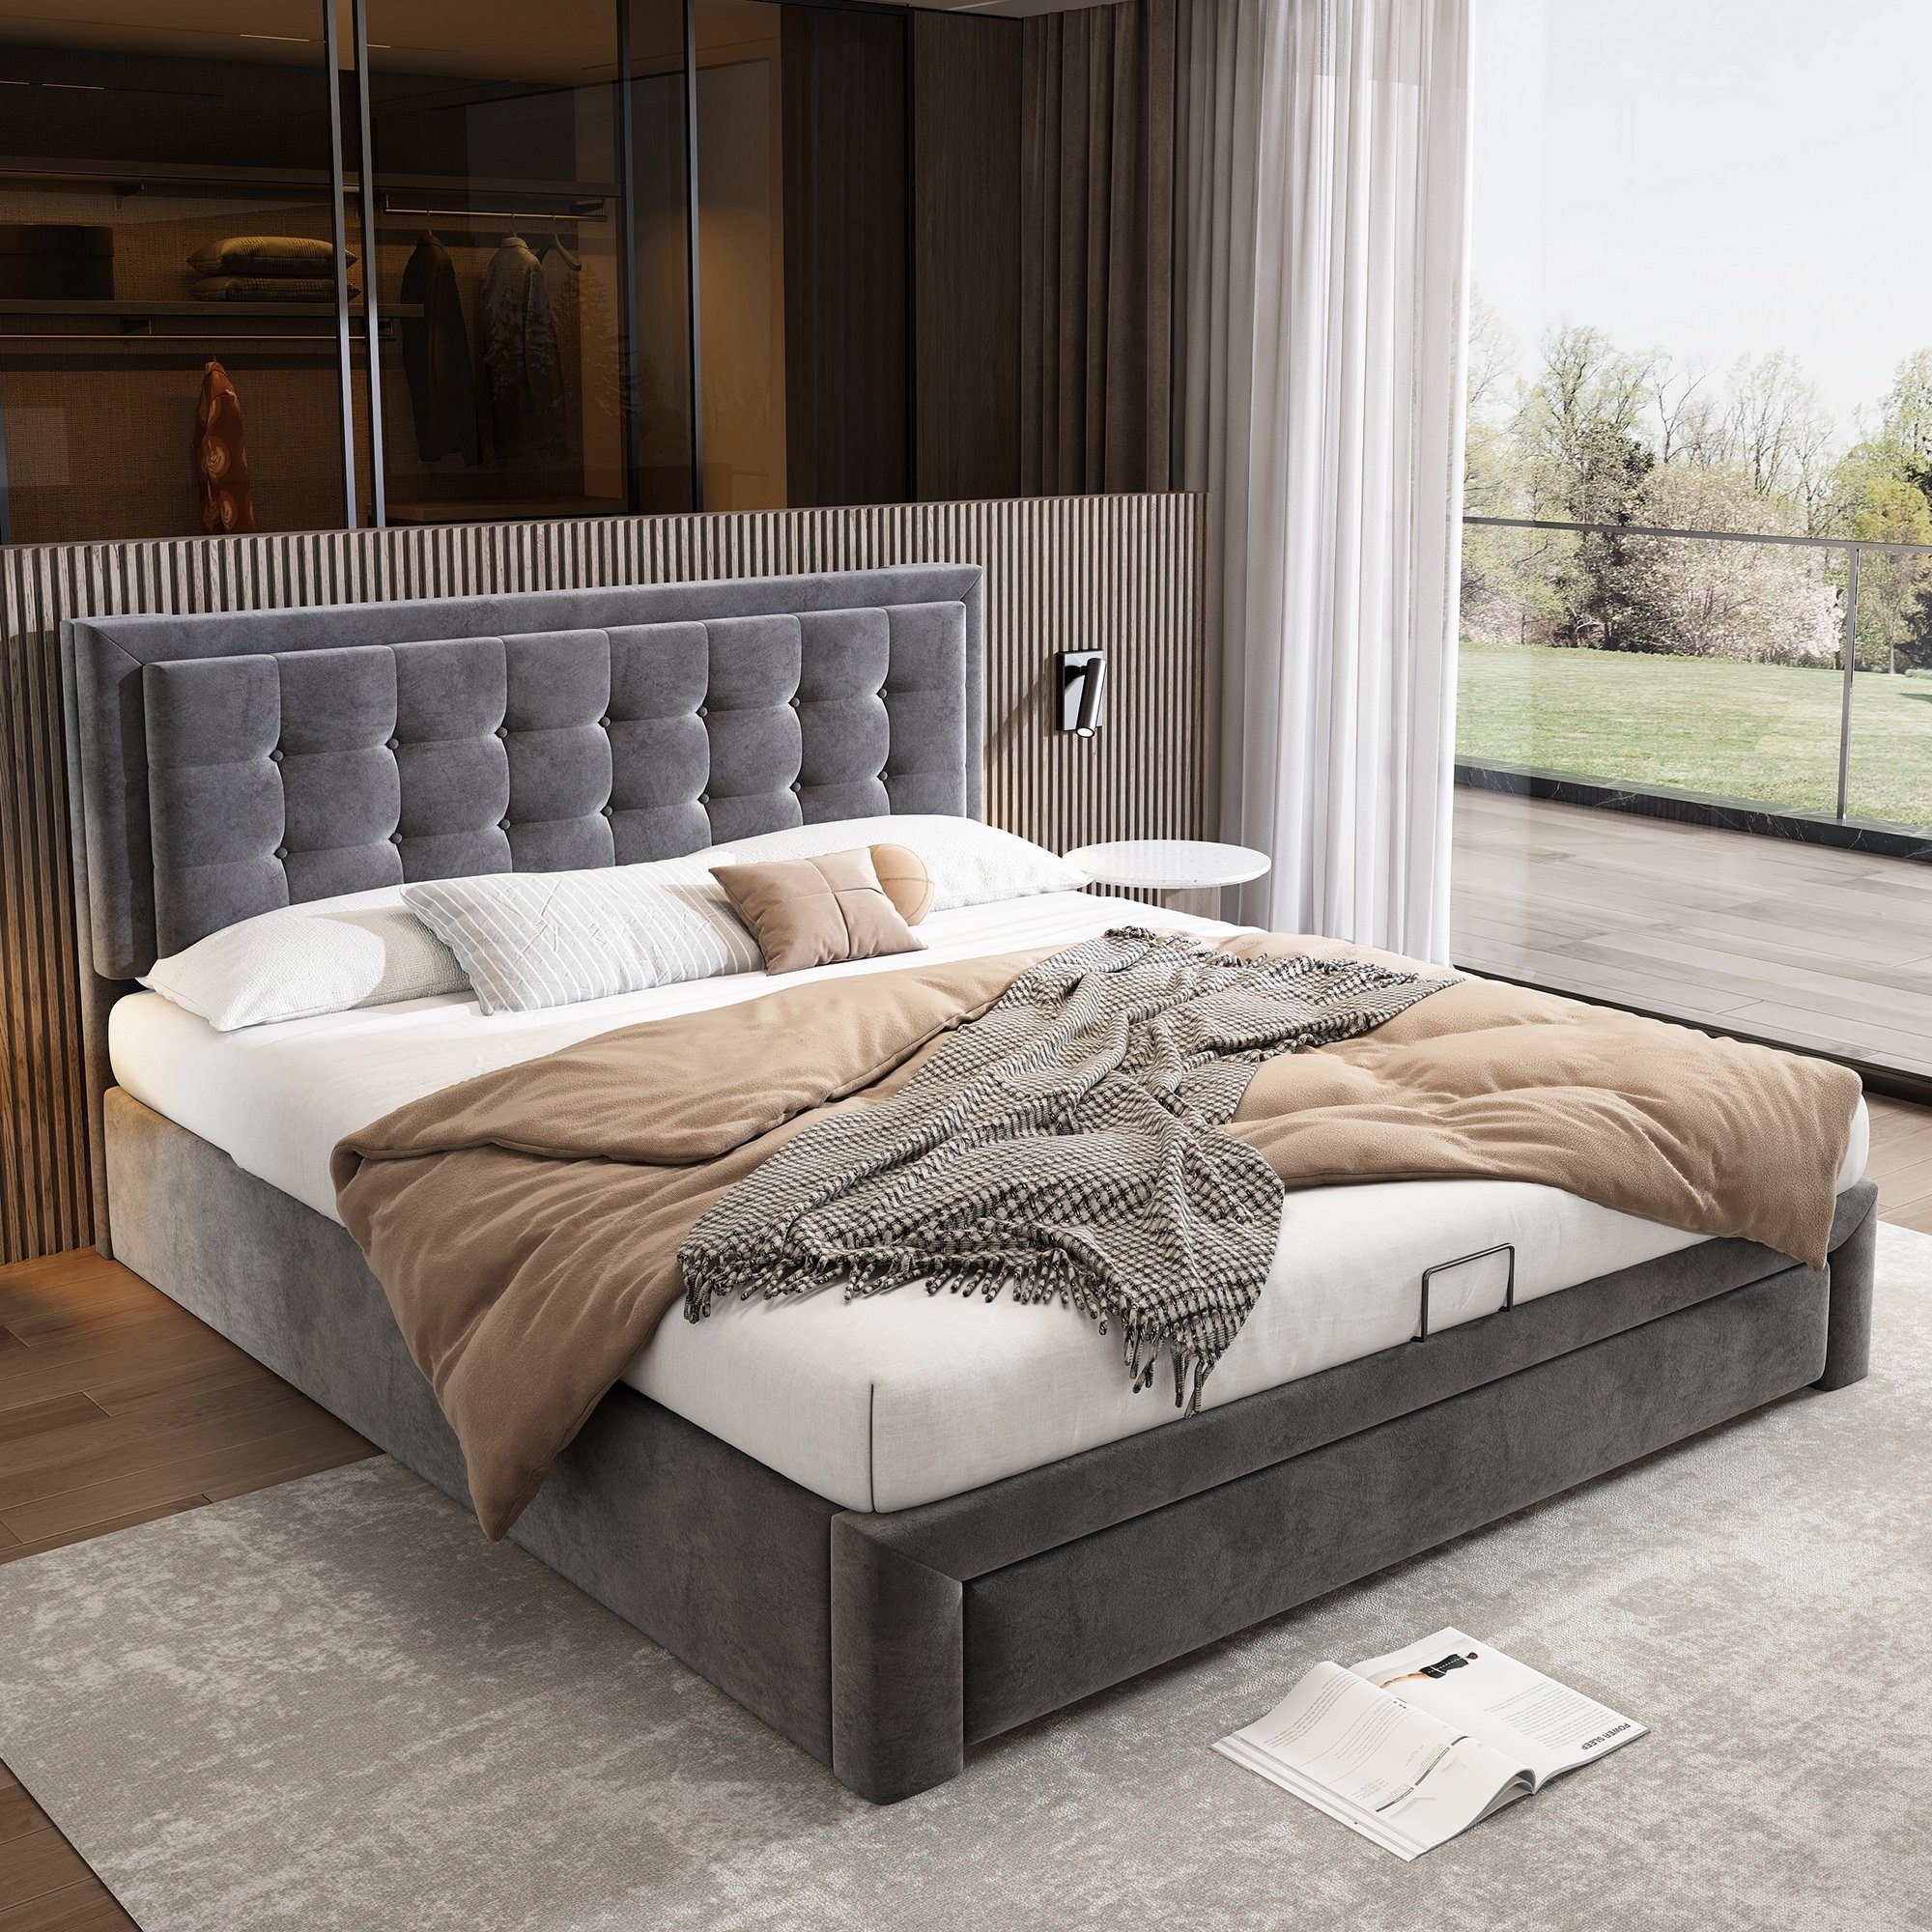 Celya Polsterbett Bett mit Kasten und Schubladen, 180×200cm Doppelbett,  Lattenrost, Höhenverstellbares Kopfteil, Leistungsstarke  Speichermöglichkeiten, 200×185×90-100 cm